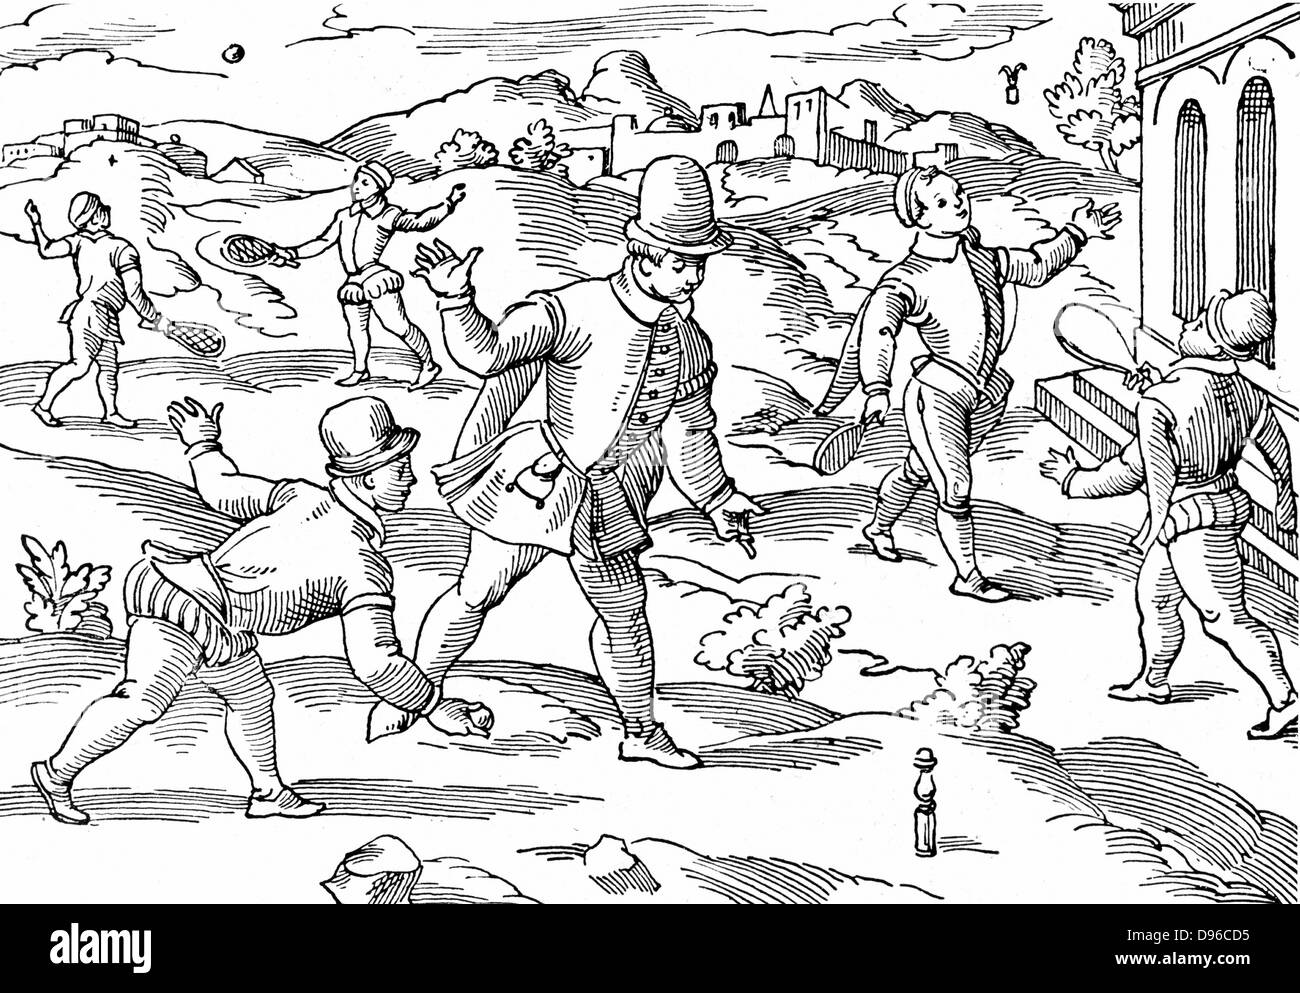 Jeux d'enfants au 16ème siècle : en premier plan garçons jouent une forme de quilles, volant à droite, gauche, en arrière-plan jouer au ballon avec des raquettes cordées. Gravure sur bois. Banque D'Images